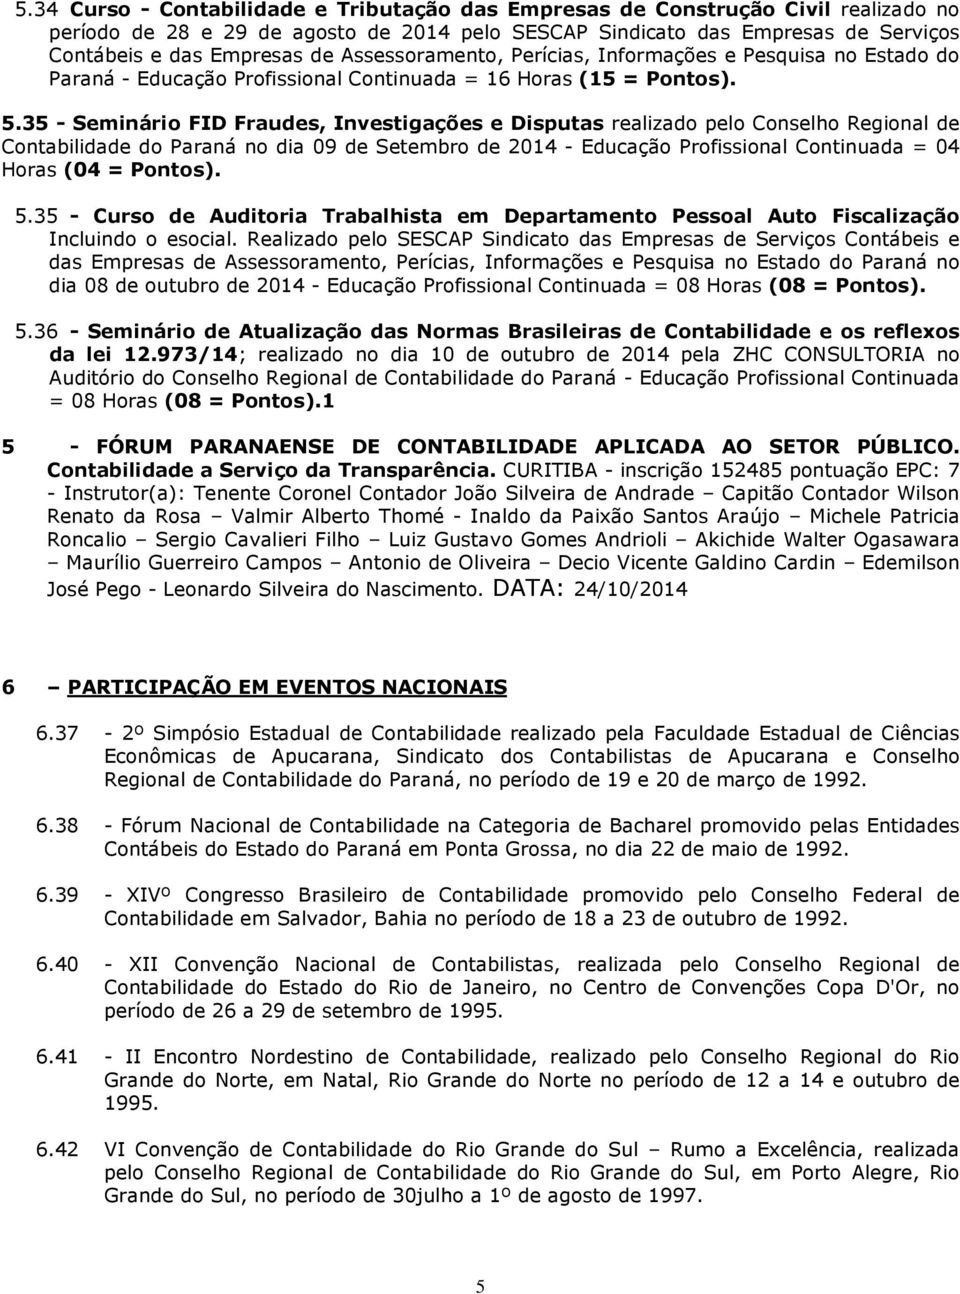 35 - Seminário FID Fraudes, Investigações e Disputas realizado pelo Conselho Regional de Contabilidade do Paraná no dia 09 de Setembro de 2014 - Educação Profissional Continuada = 04 Horas (04 =